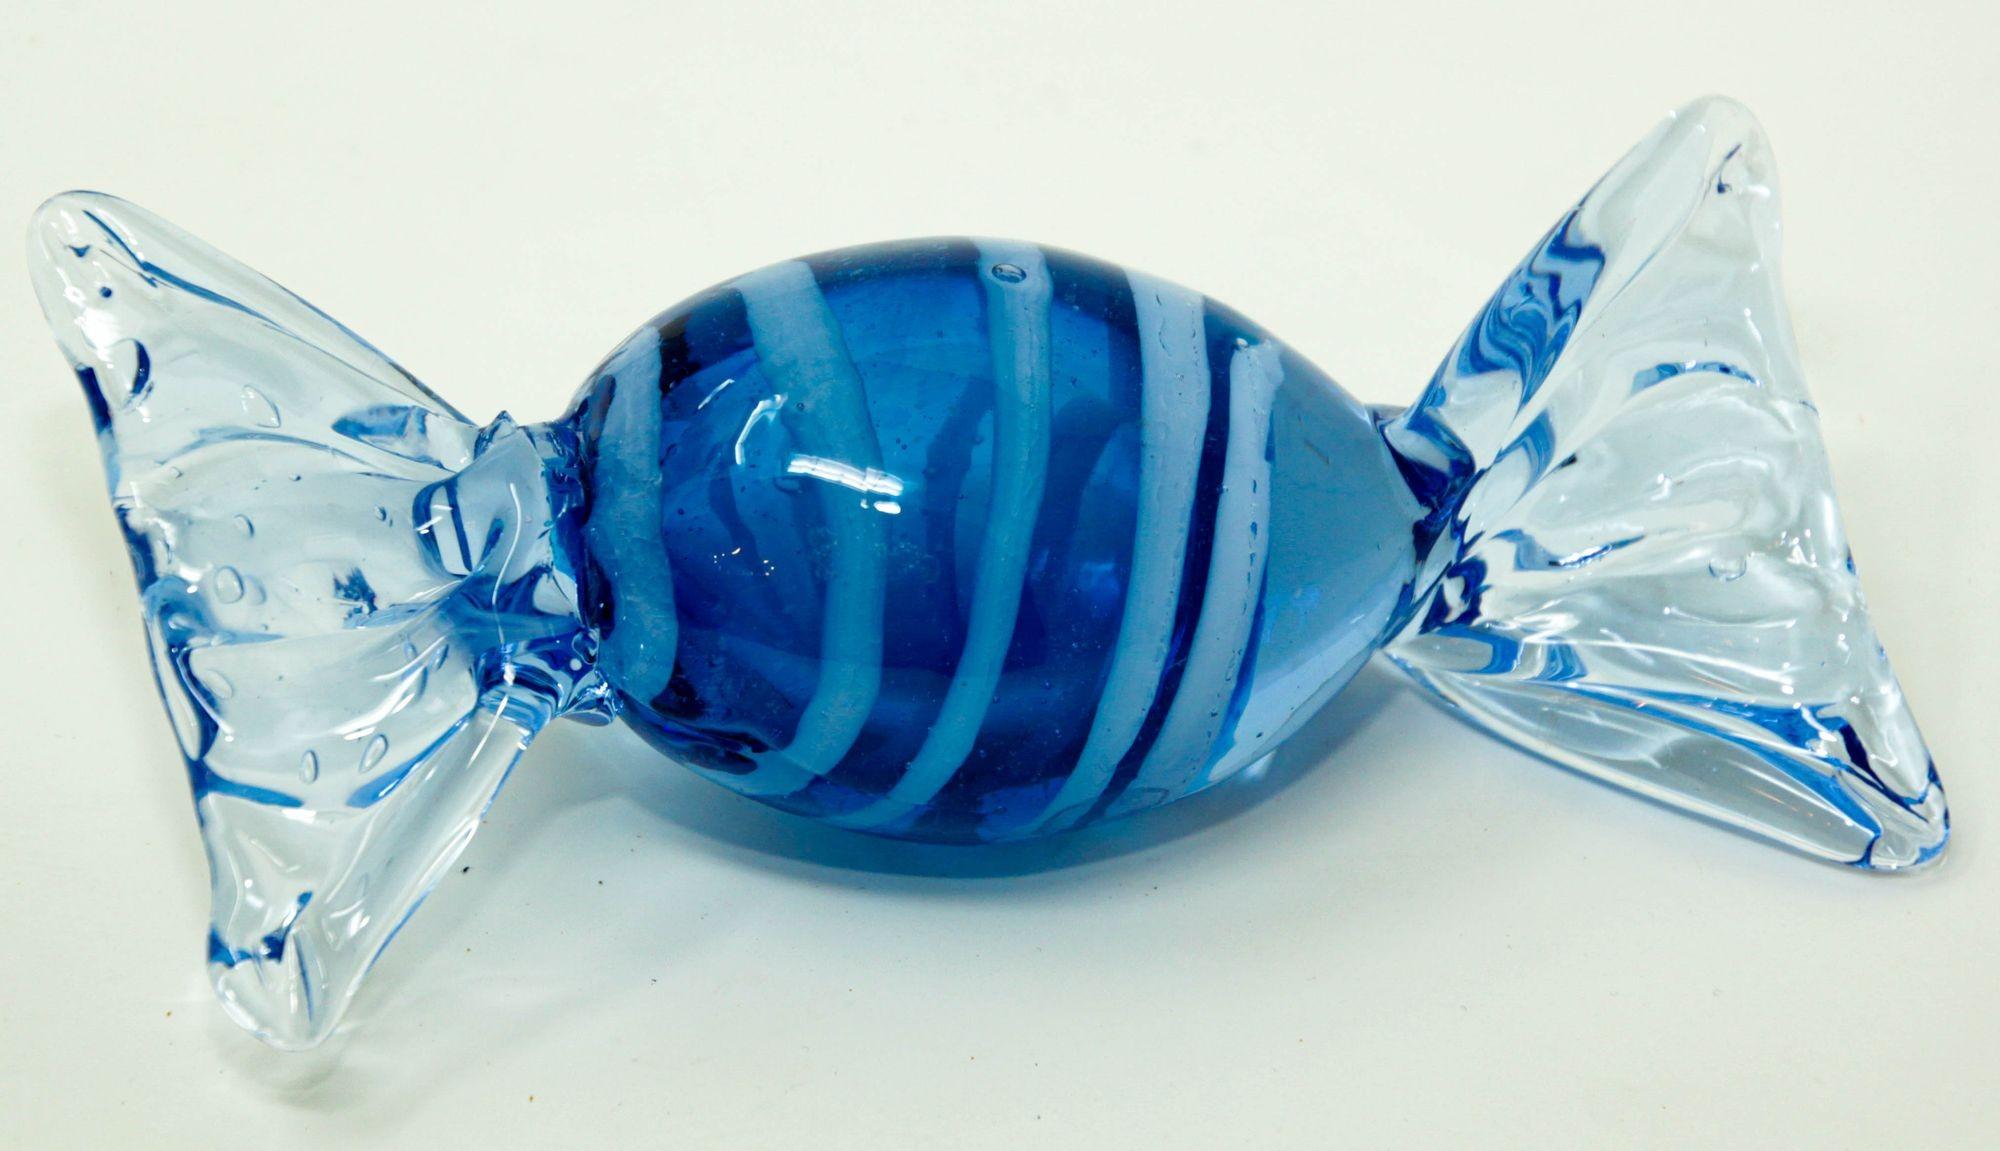 Vintage große dekorative Murano mundgeblasenem Glas eingewickelt blau harten Bonbon Briefbeschwerer.
Vintage überdimensionale Murano blau geblasen Glas Süßigkeiten Skulptur von Süßigkeiten in Zellophan verpackt ist ein Stück Pop-Art.
Diese